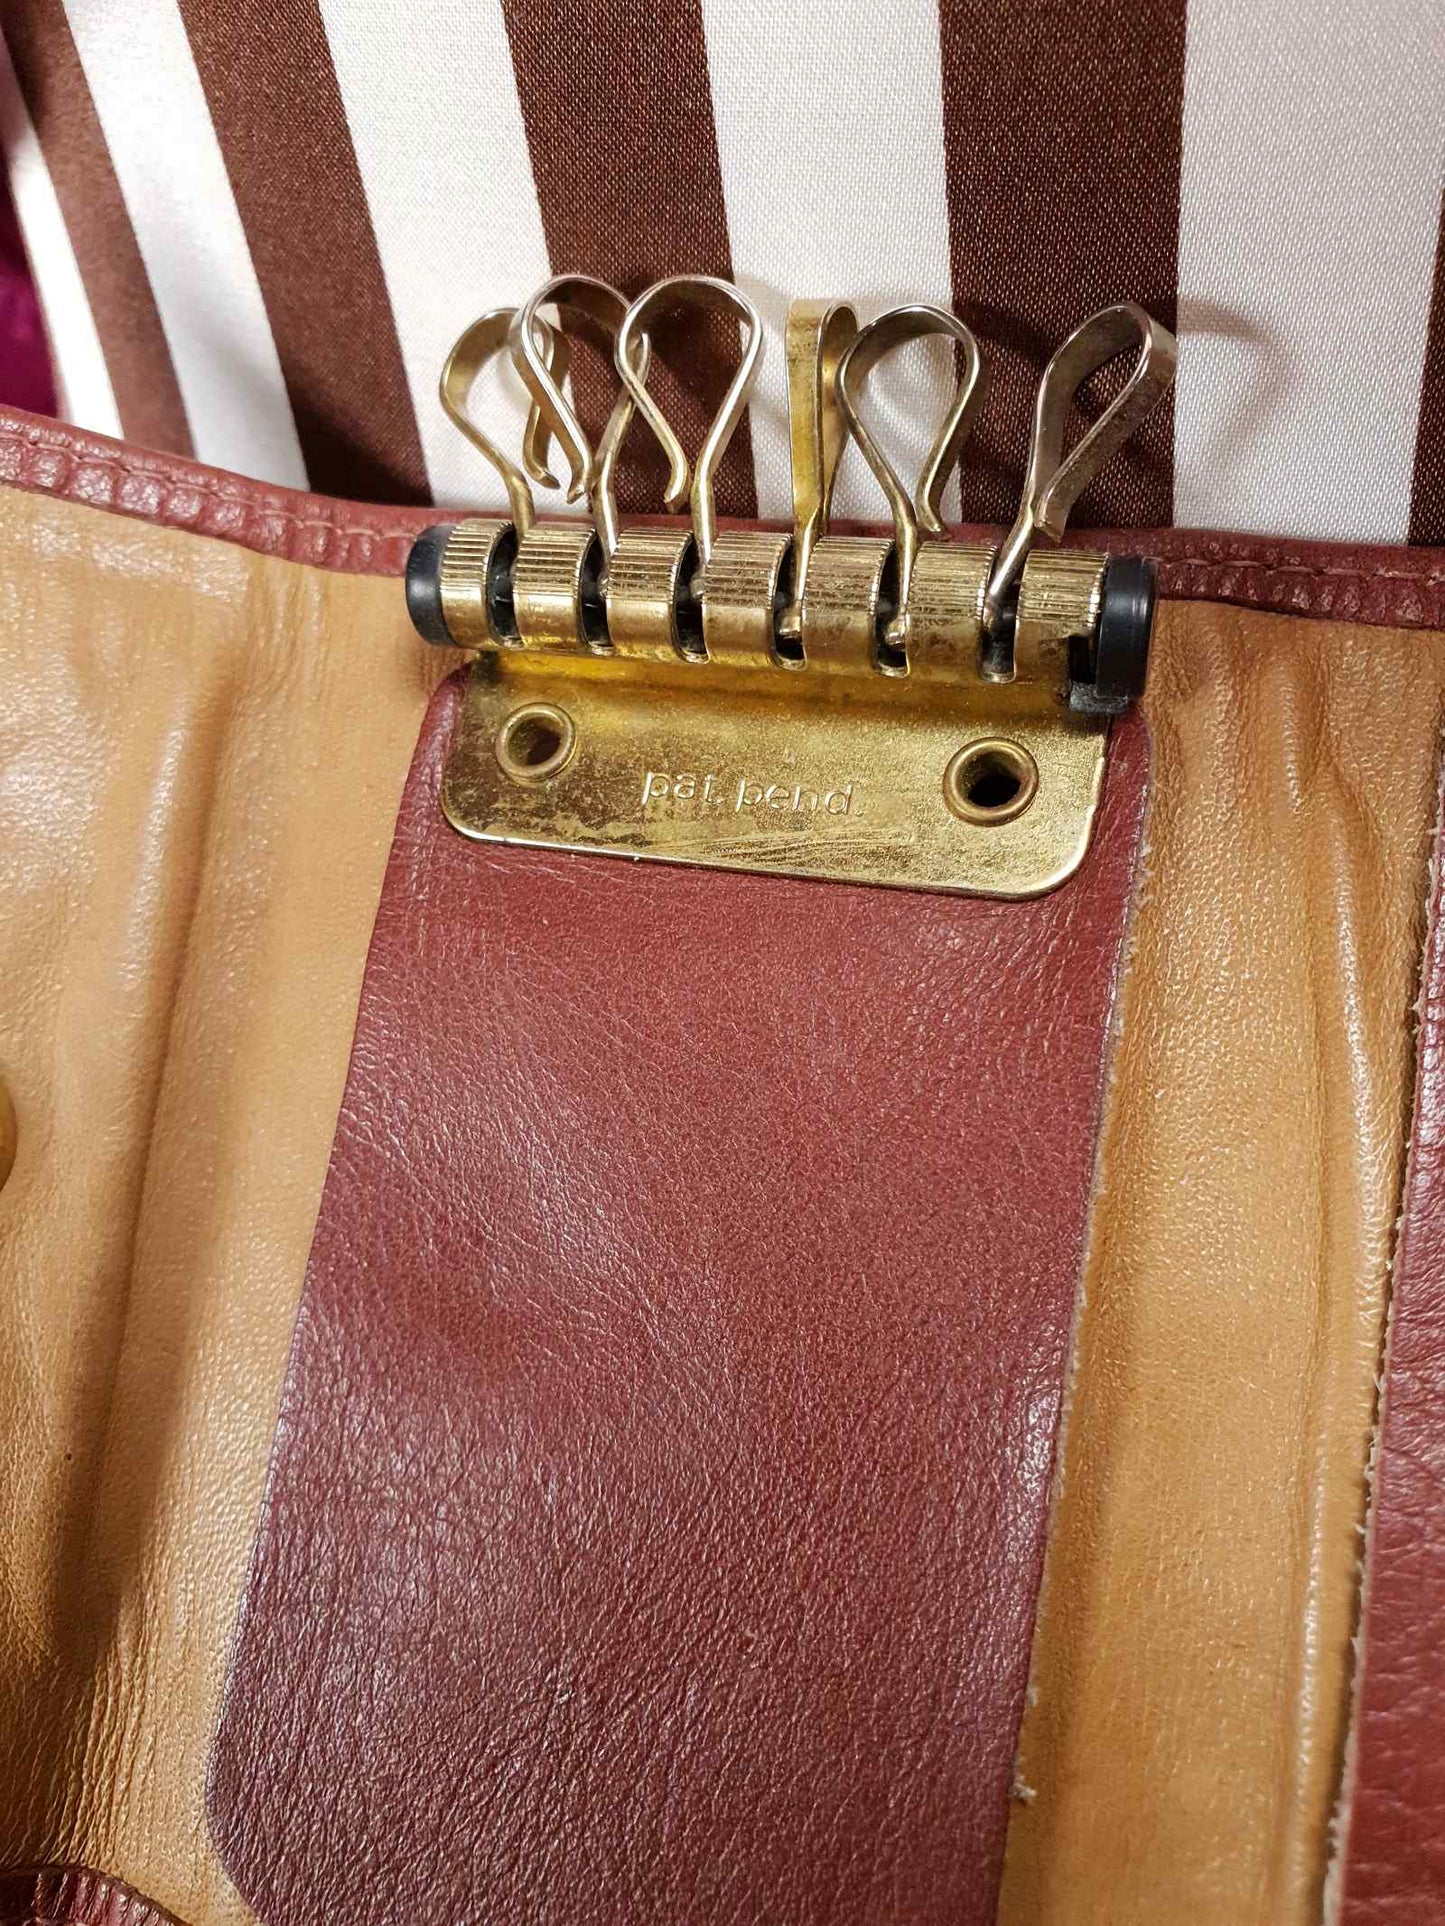 Vintage 1970s Buxton Key Holder Omega Soft Hide Leather Wallet